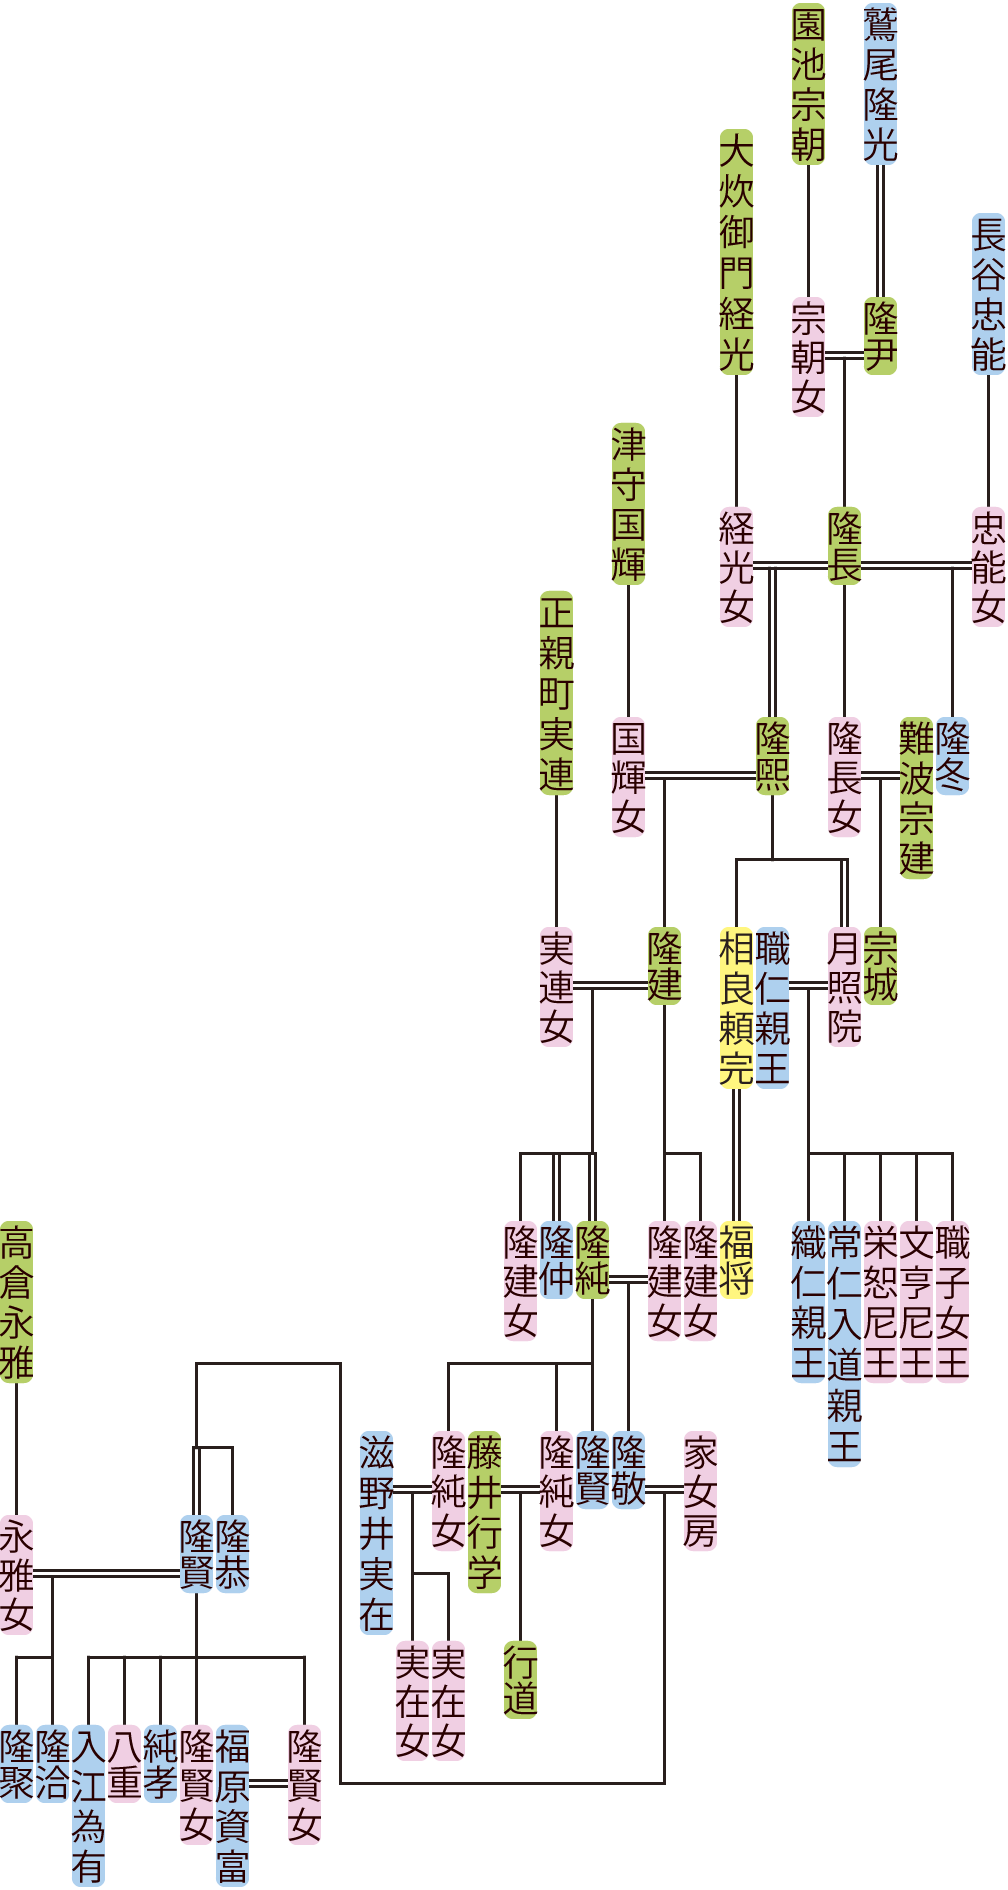 鷲尾隆長～隆聚の系図